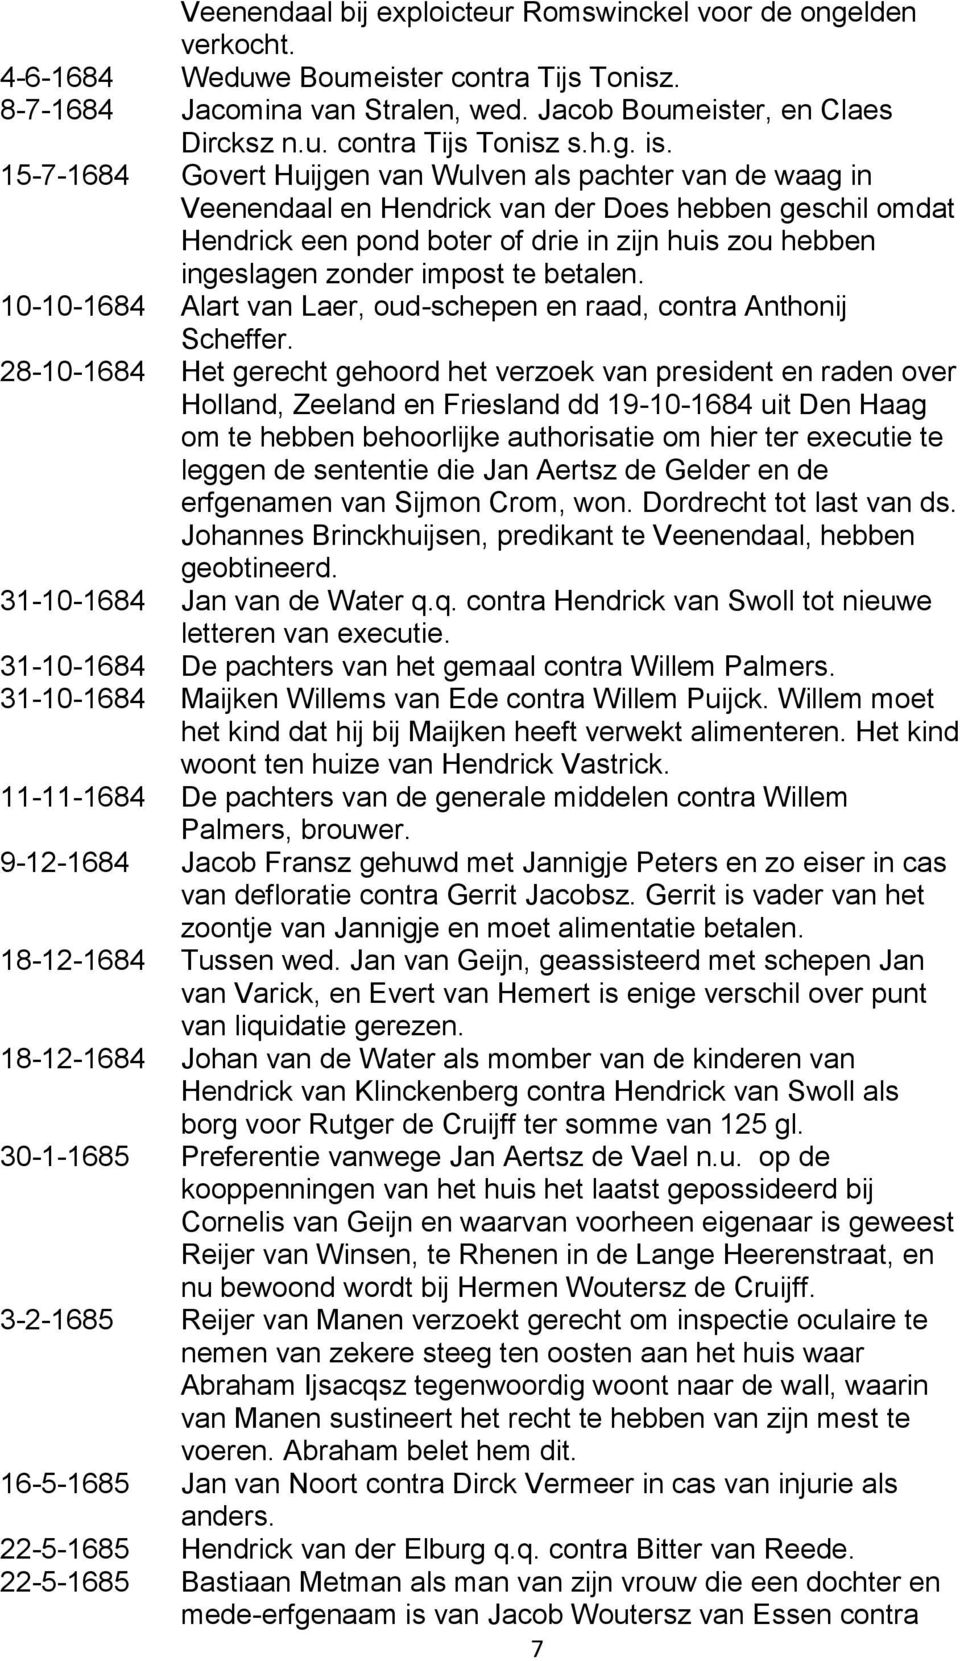 15-7-1684 Govert Huijgen van Wulven als pachter van de waag in Veenendaal en Hendrick van der Does hebben geschil omdat Hendrick een pond boter of drie in zijn huis zou hebben ingeslagen zonder